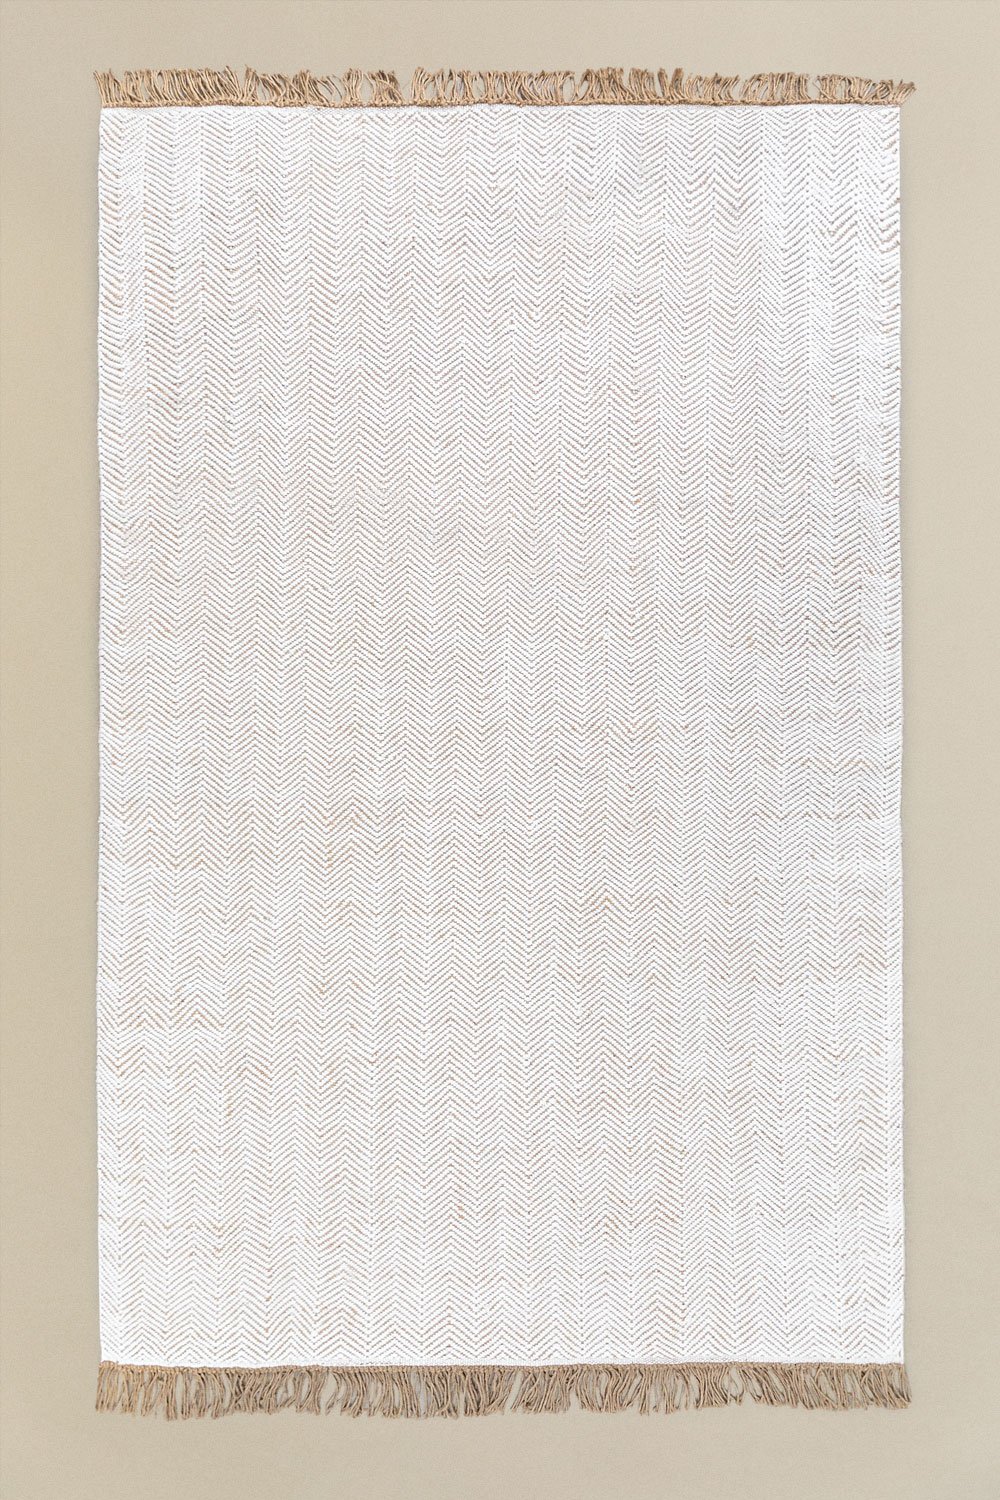 Tappeto da esterno (340x200 cm) Maxandra, immagine della galleria 1